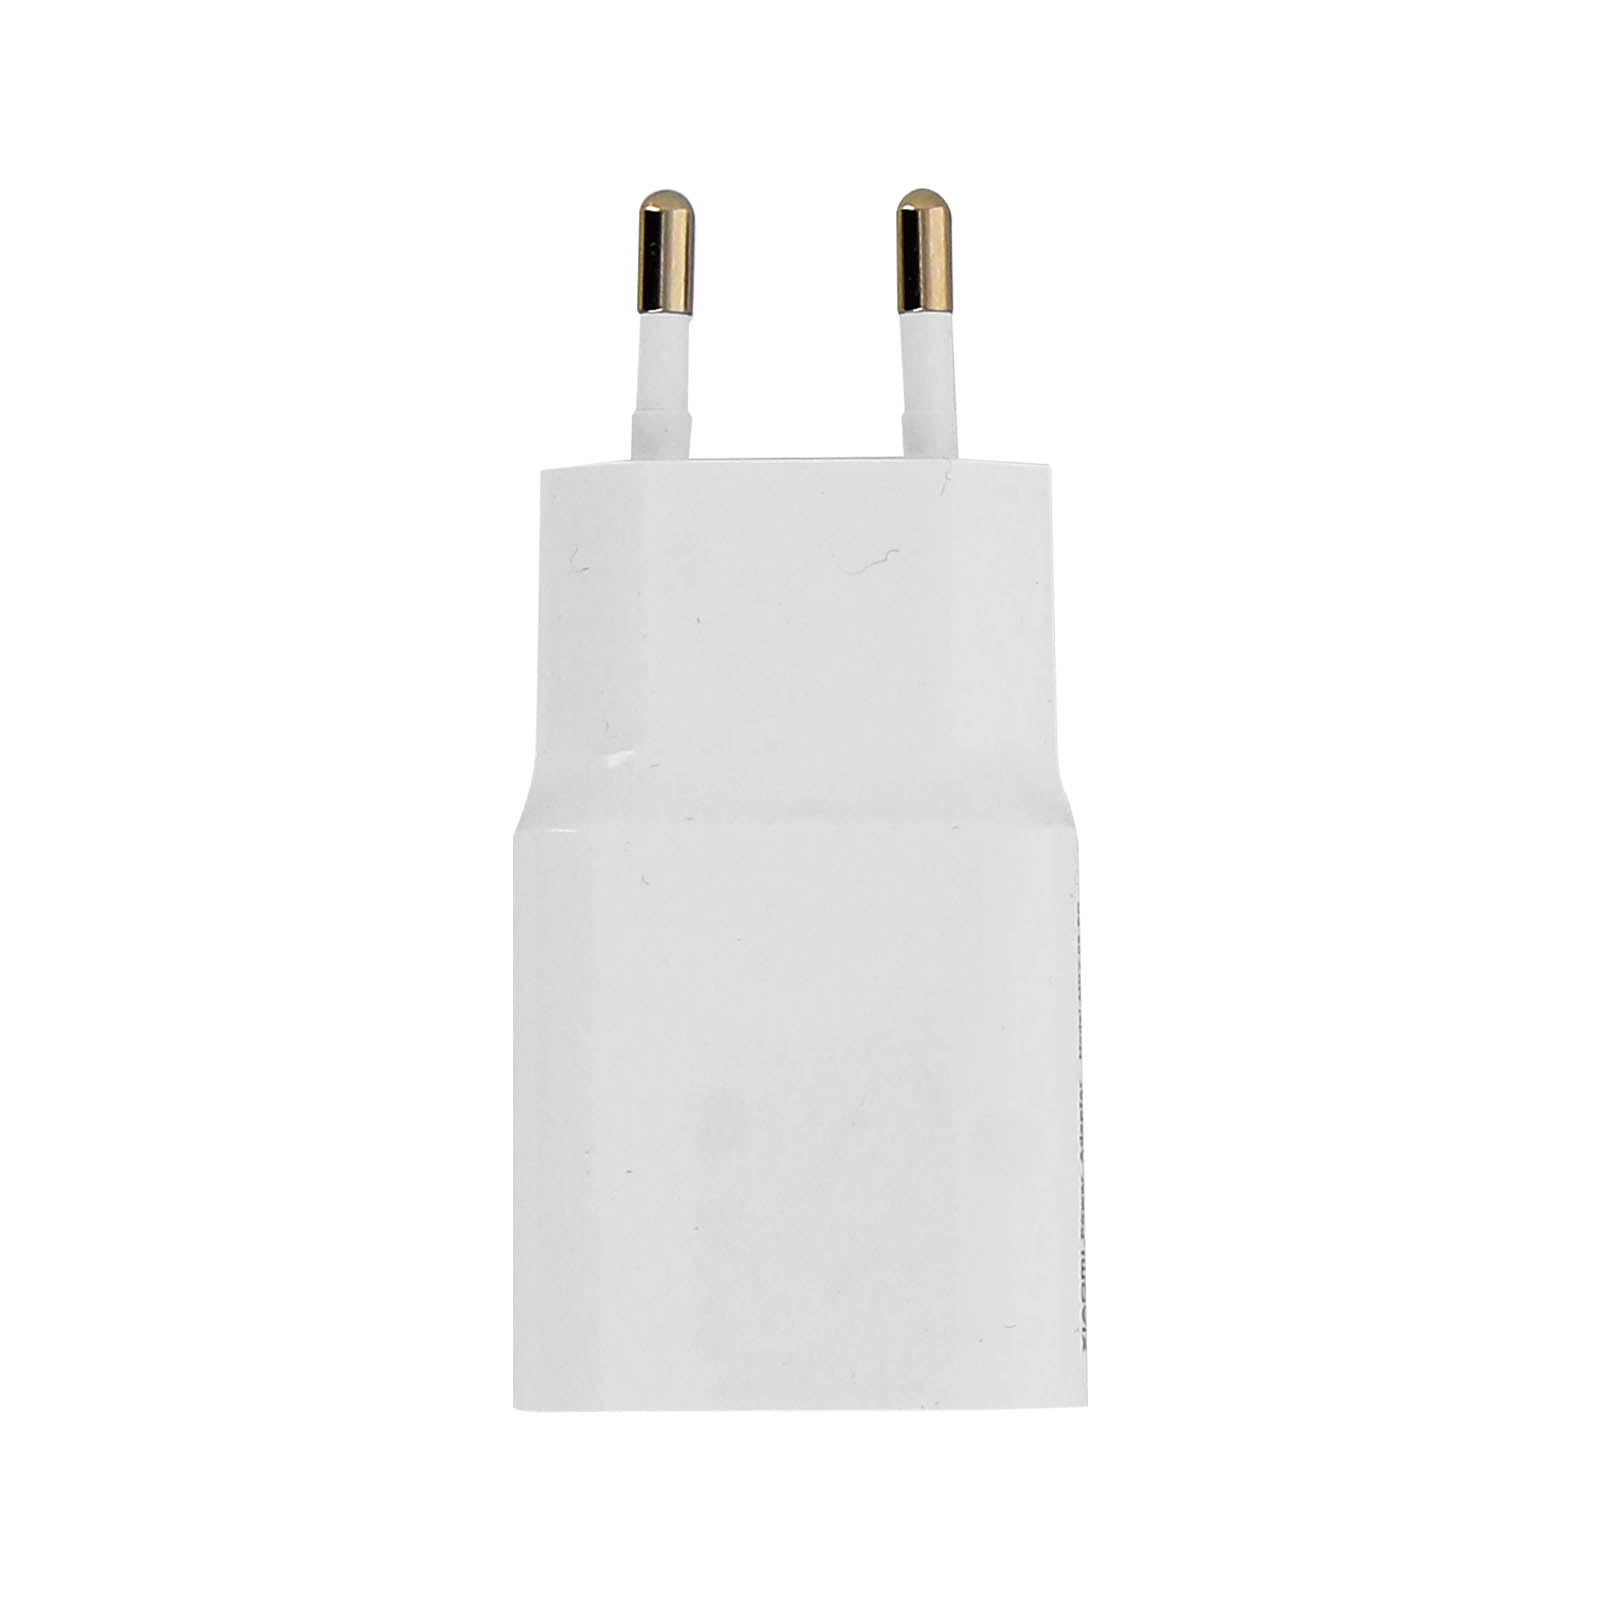 XIAOMI Netzteil, USB Netzteile Weiß 2A Wand-Ladegerät Xiaomi